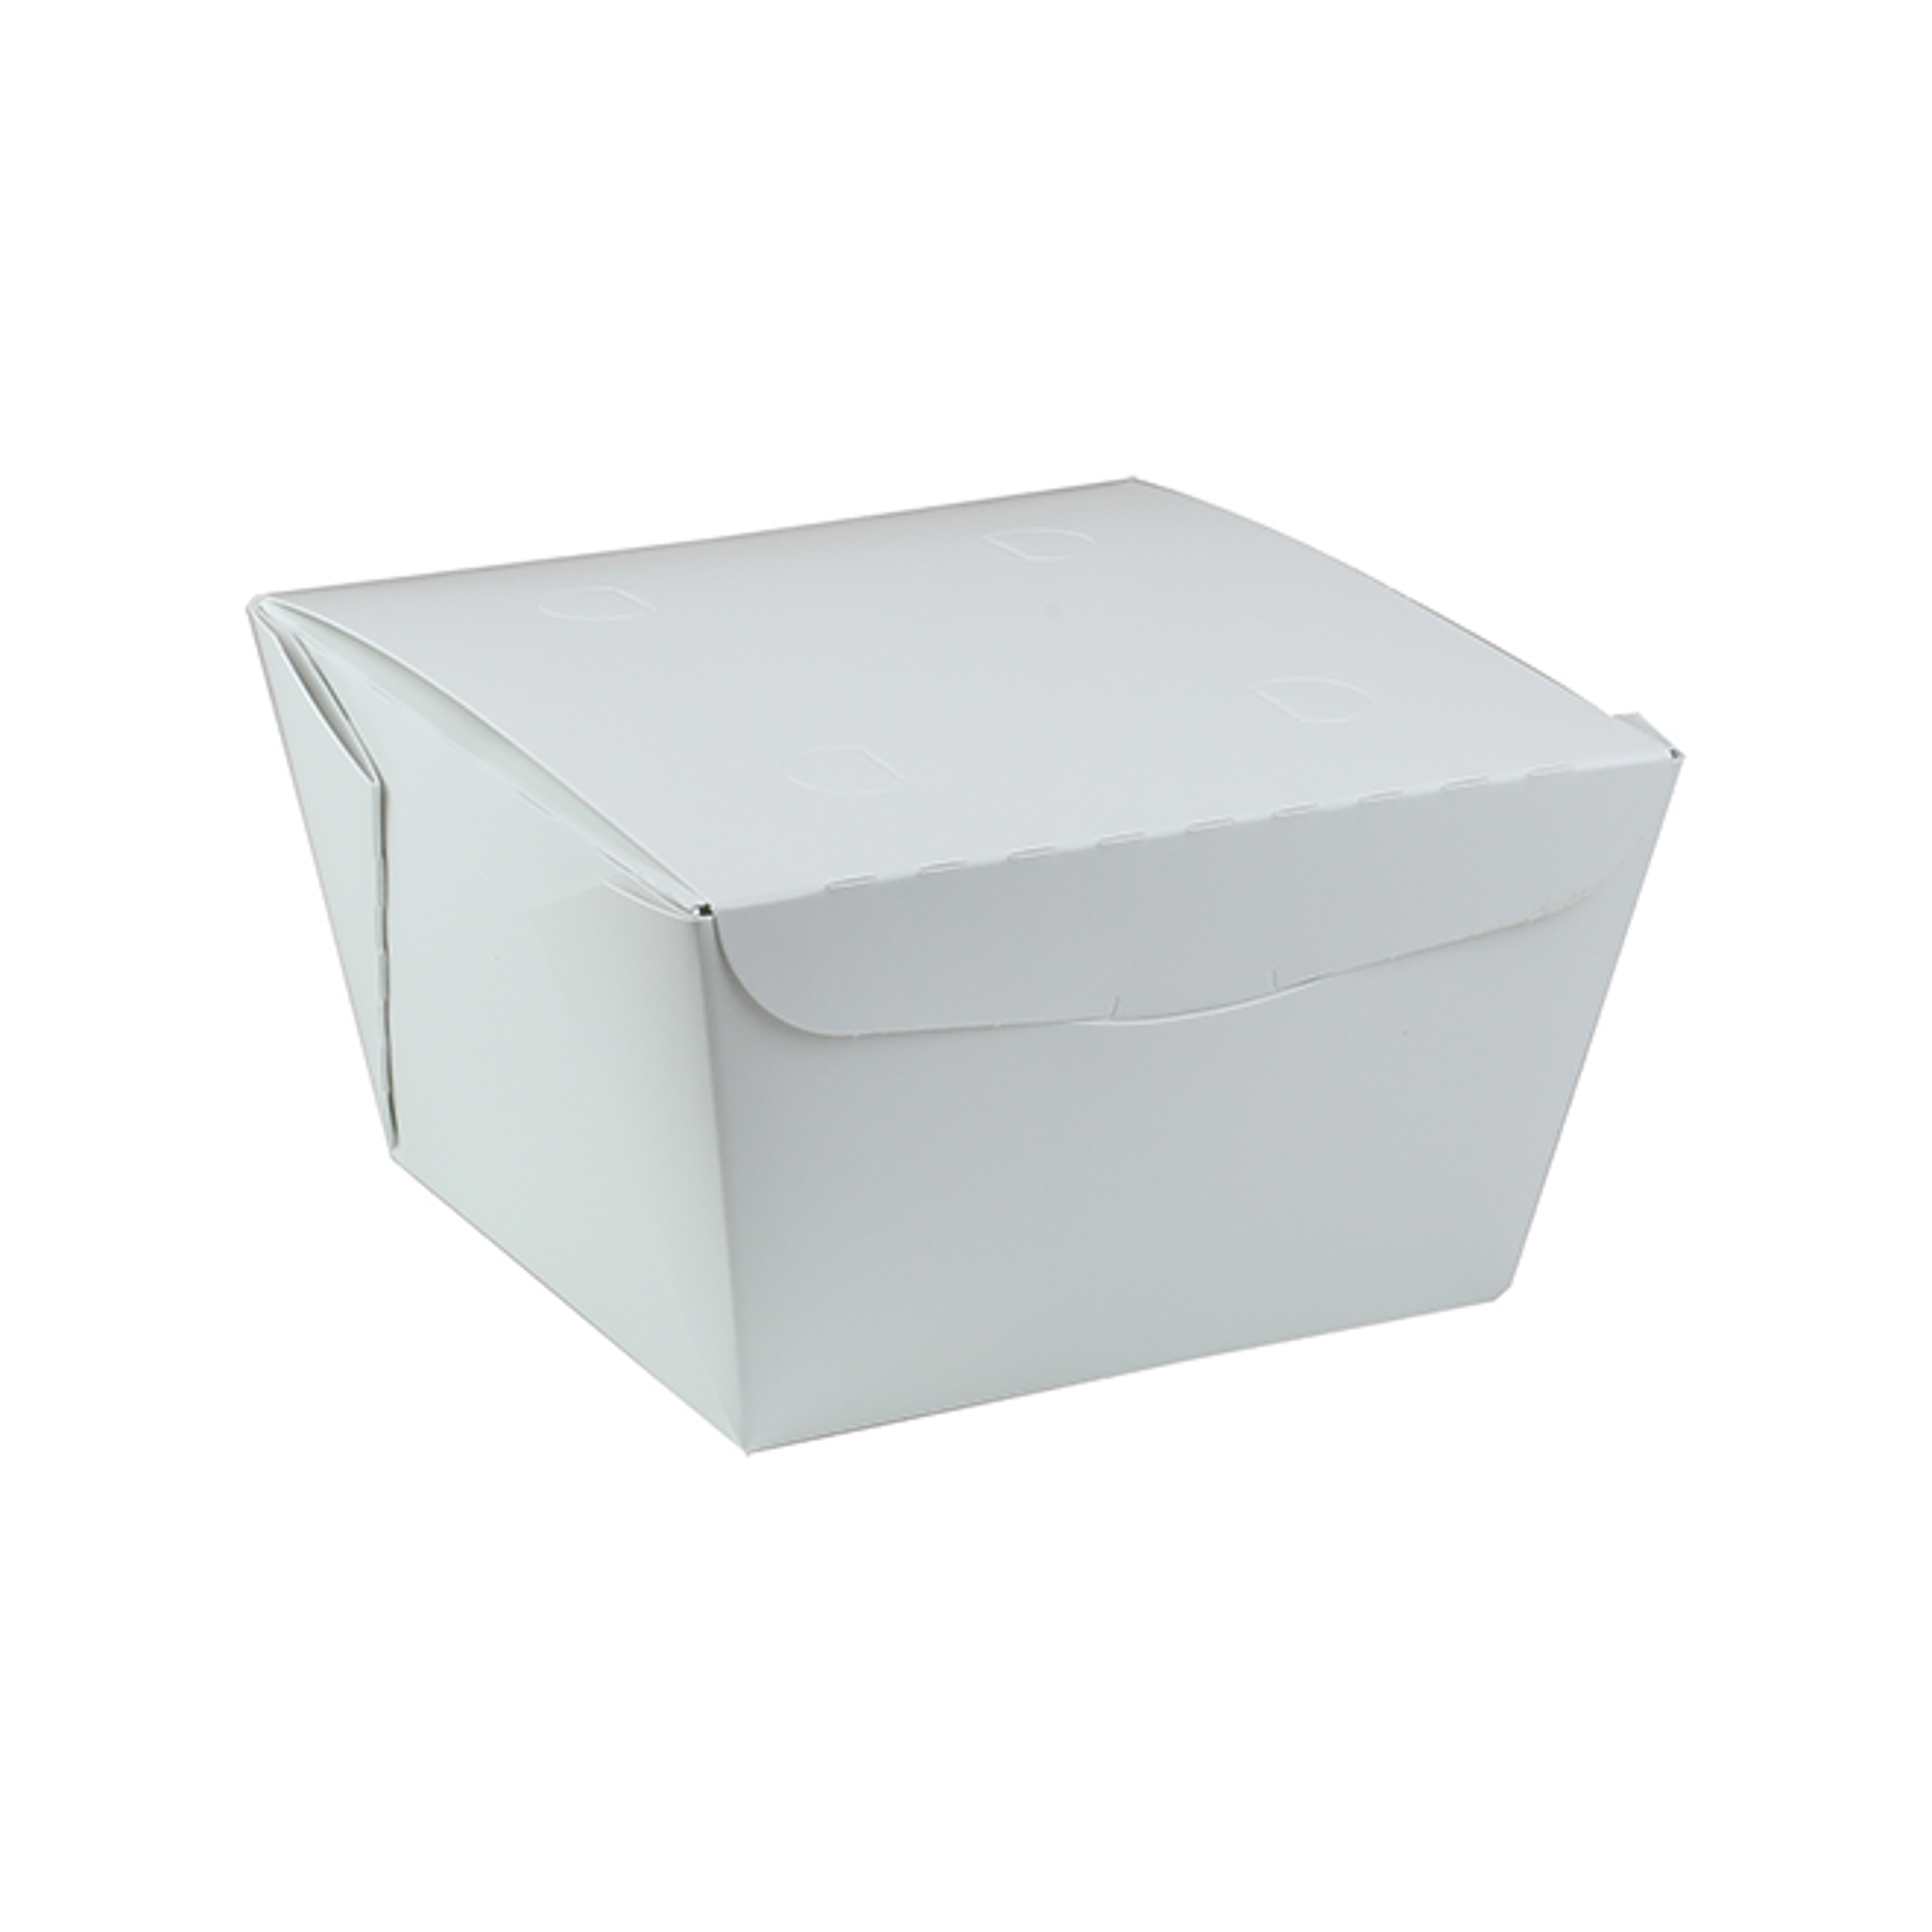 ONE BOX US – OneBox USA